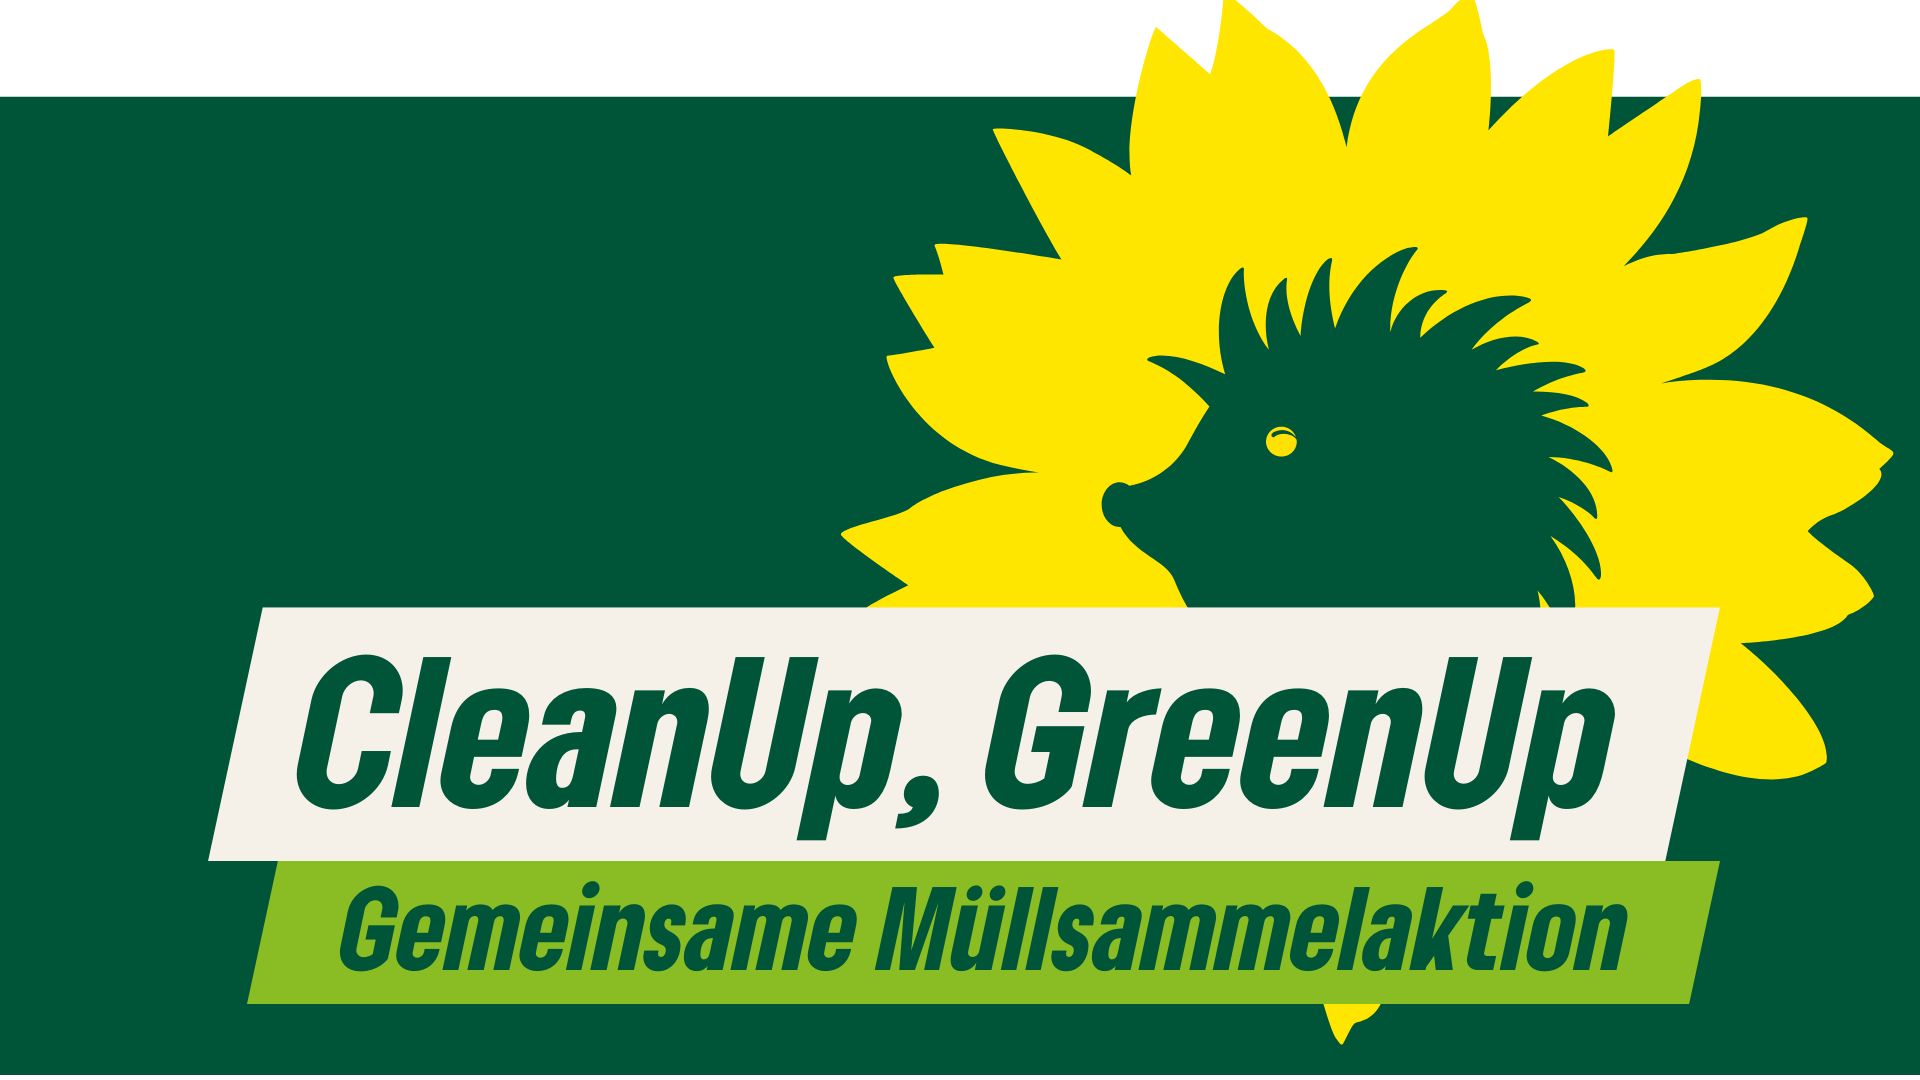 Grafik mit Moosgrünem Hintergrund, darüber der Text "CleanUp, GreenUp. Gemeinsame Müllsammelaktion" und ein Logo der Grünen Berlin mit einer gelben Sonnenblumenblüte, in deren Mitte ein grüner Igel zu erkennen ist"